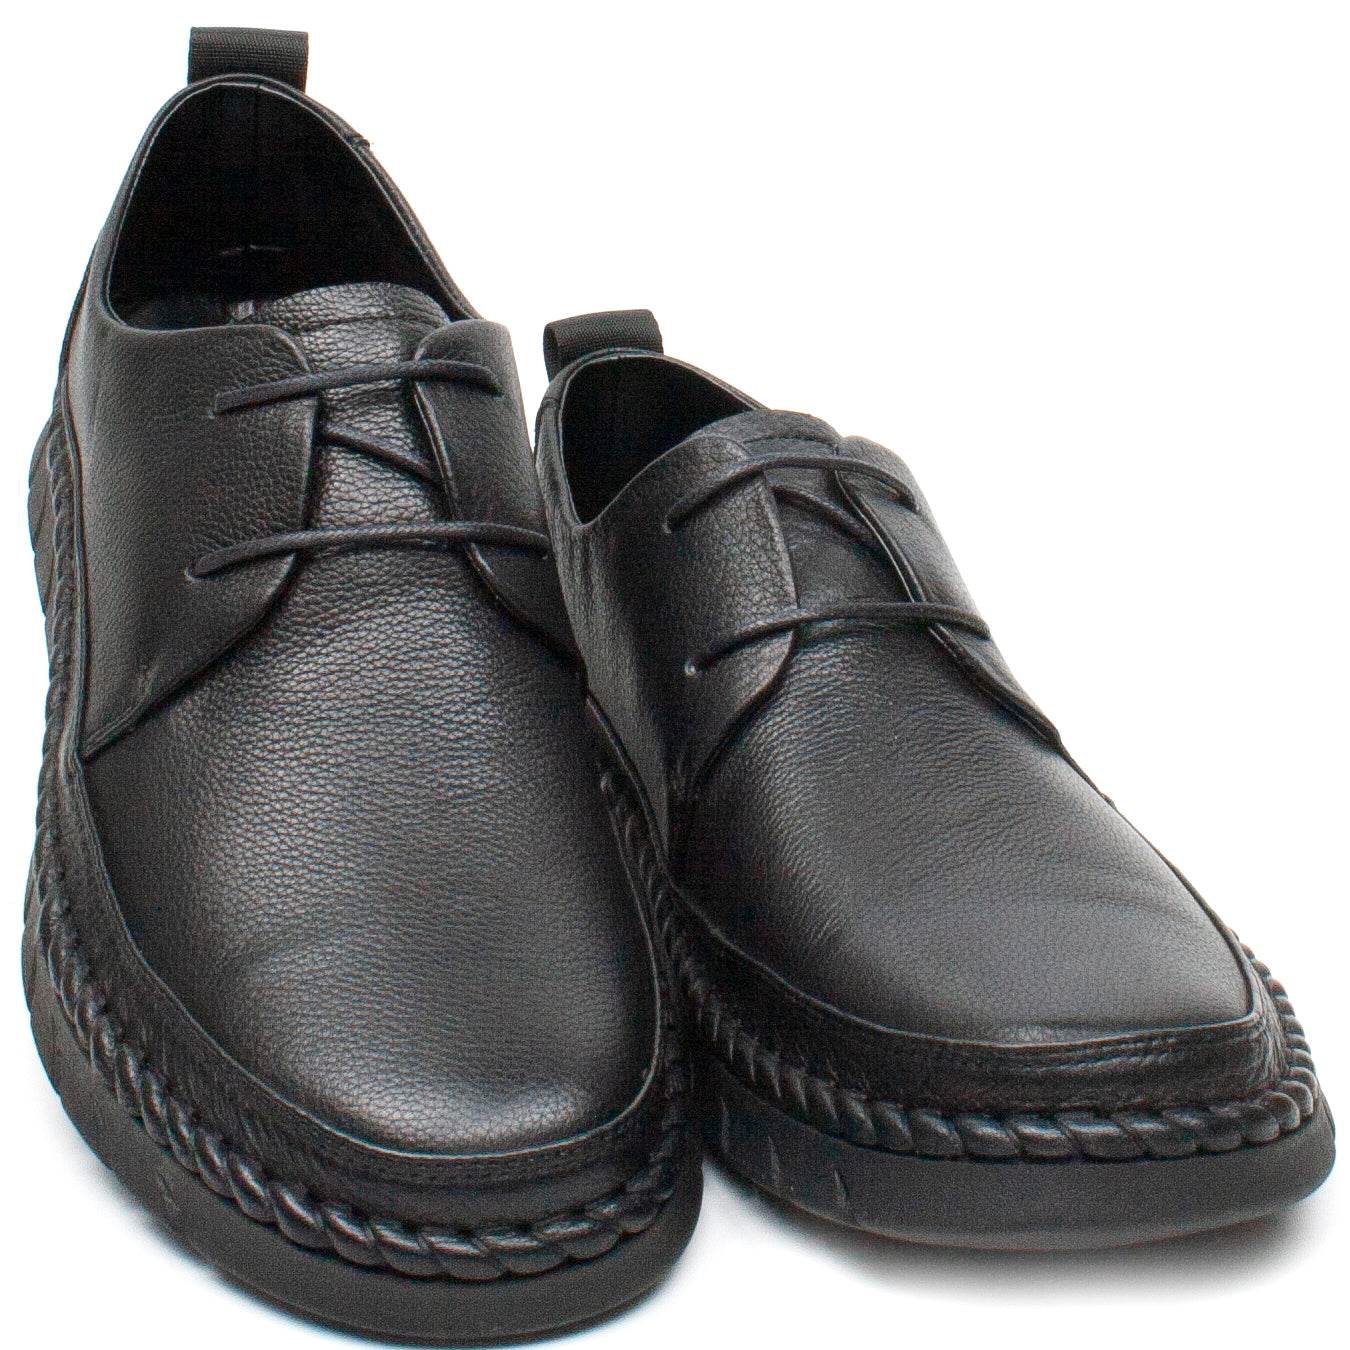 Mels Pantofi barbati HT8216 negru IB2284-NG